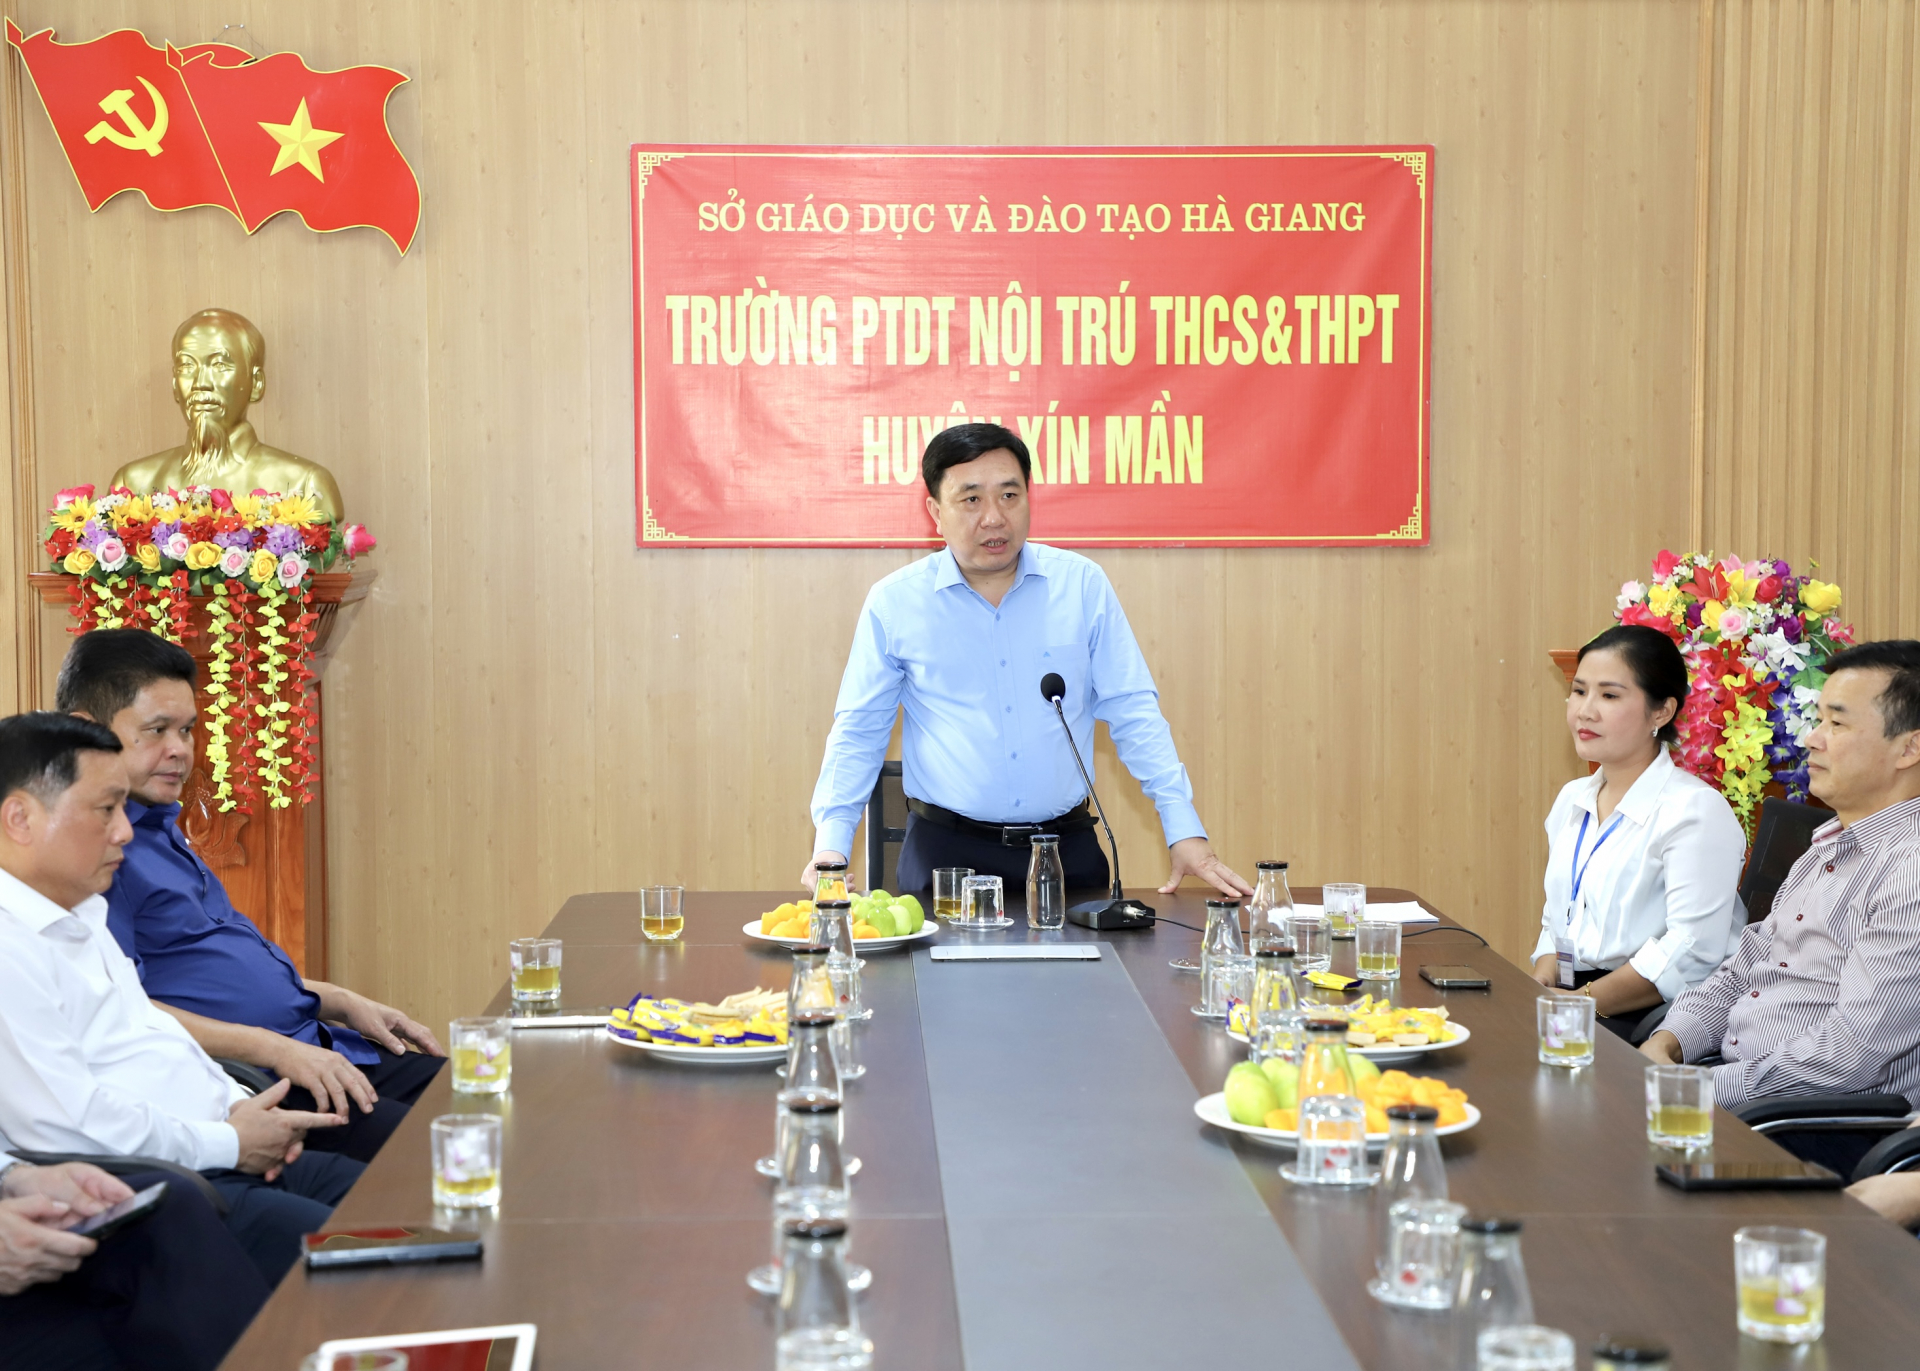 Quyền Bí thư Tỉnh ủy Nguyễn Mạnh Dũng phát biểu với cán bộ, giáo viên Trường PTDT nội trú THCS và THPT huyện Xín Mần.